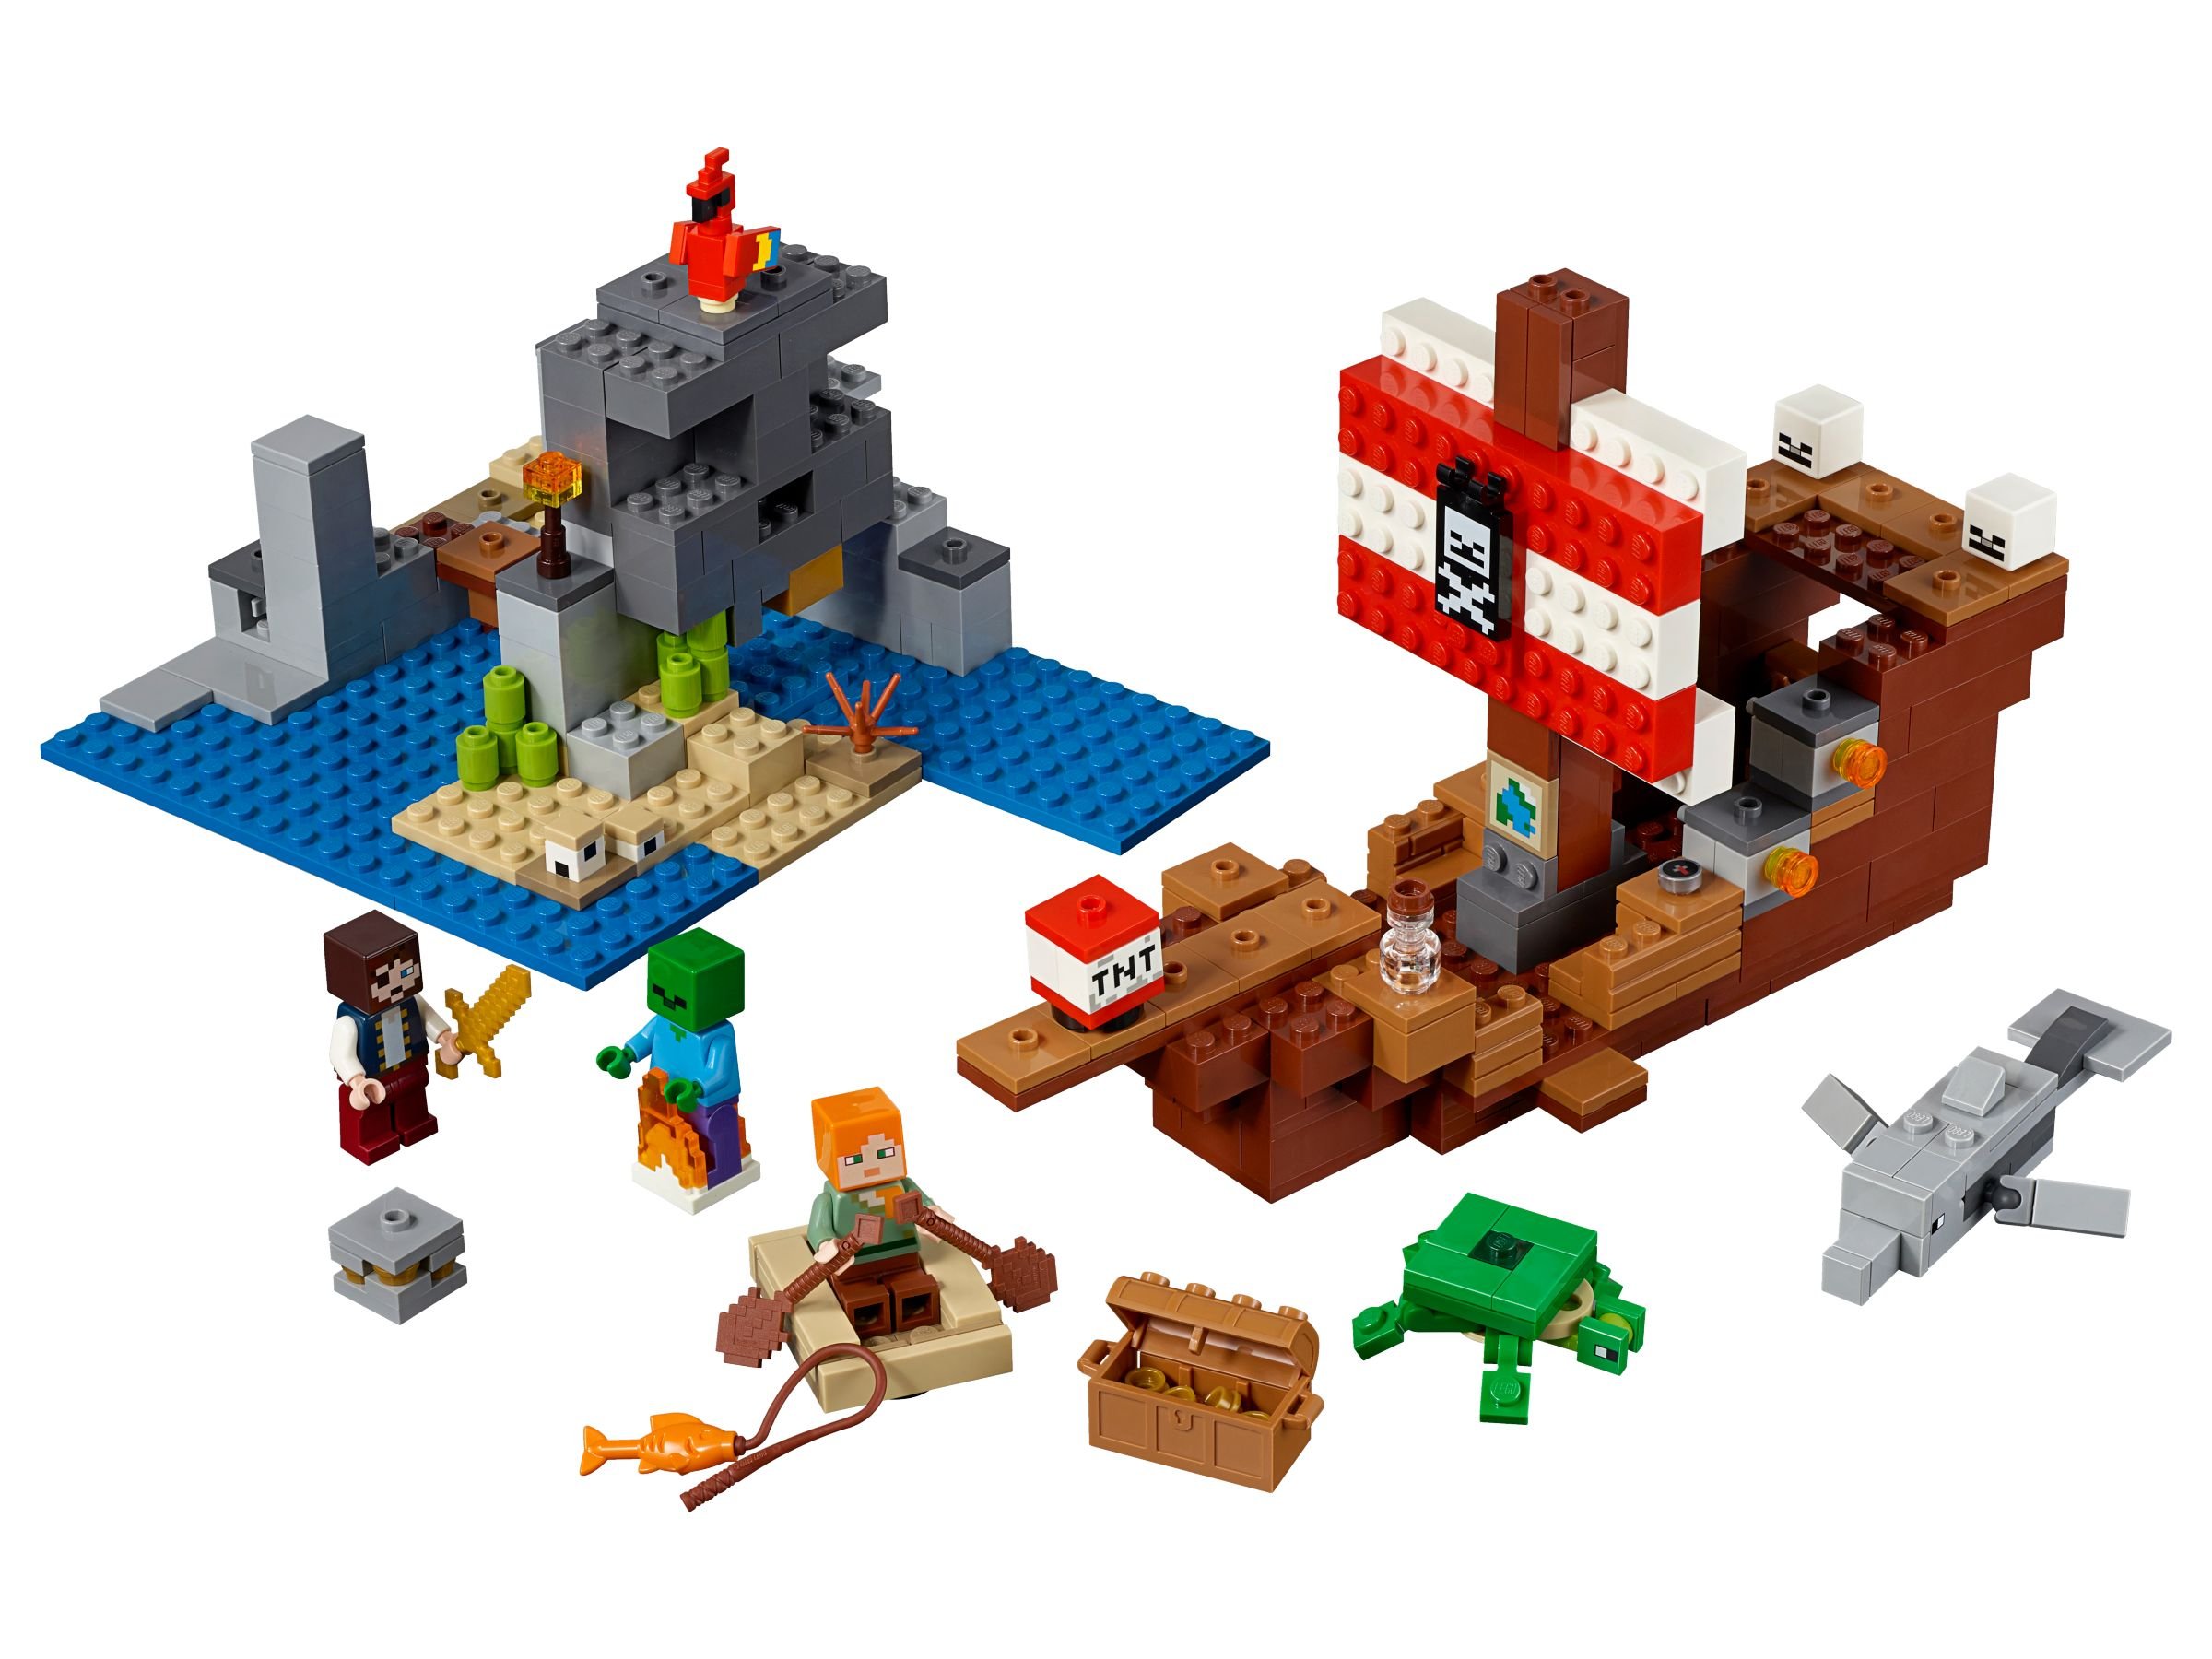 LEGO Minecraft 21152 Das Piratenschiff-Abenteuer